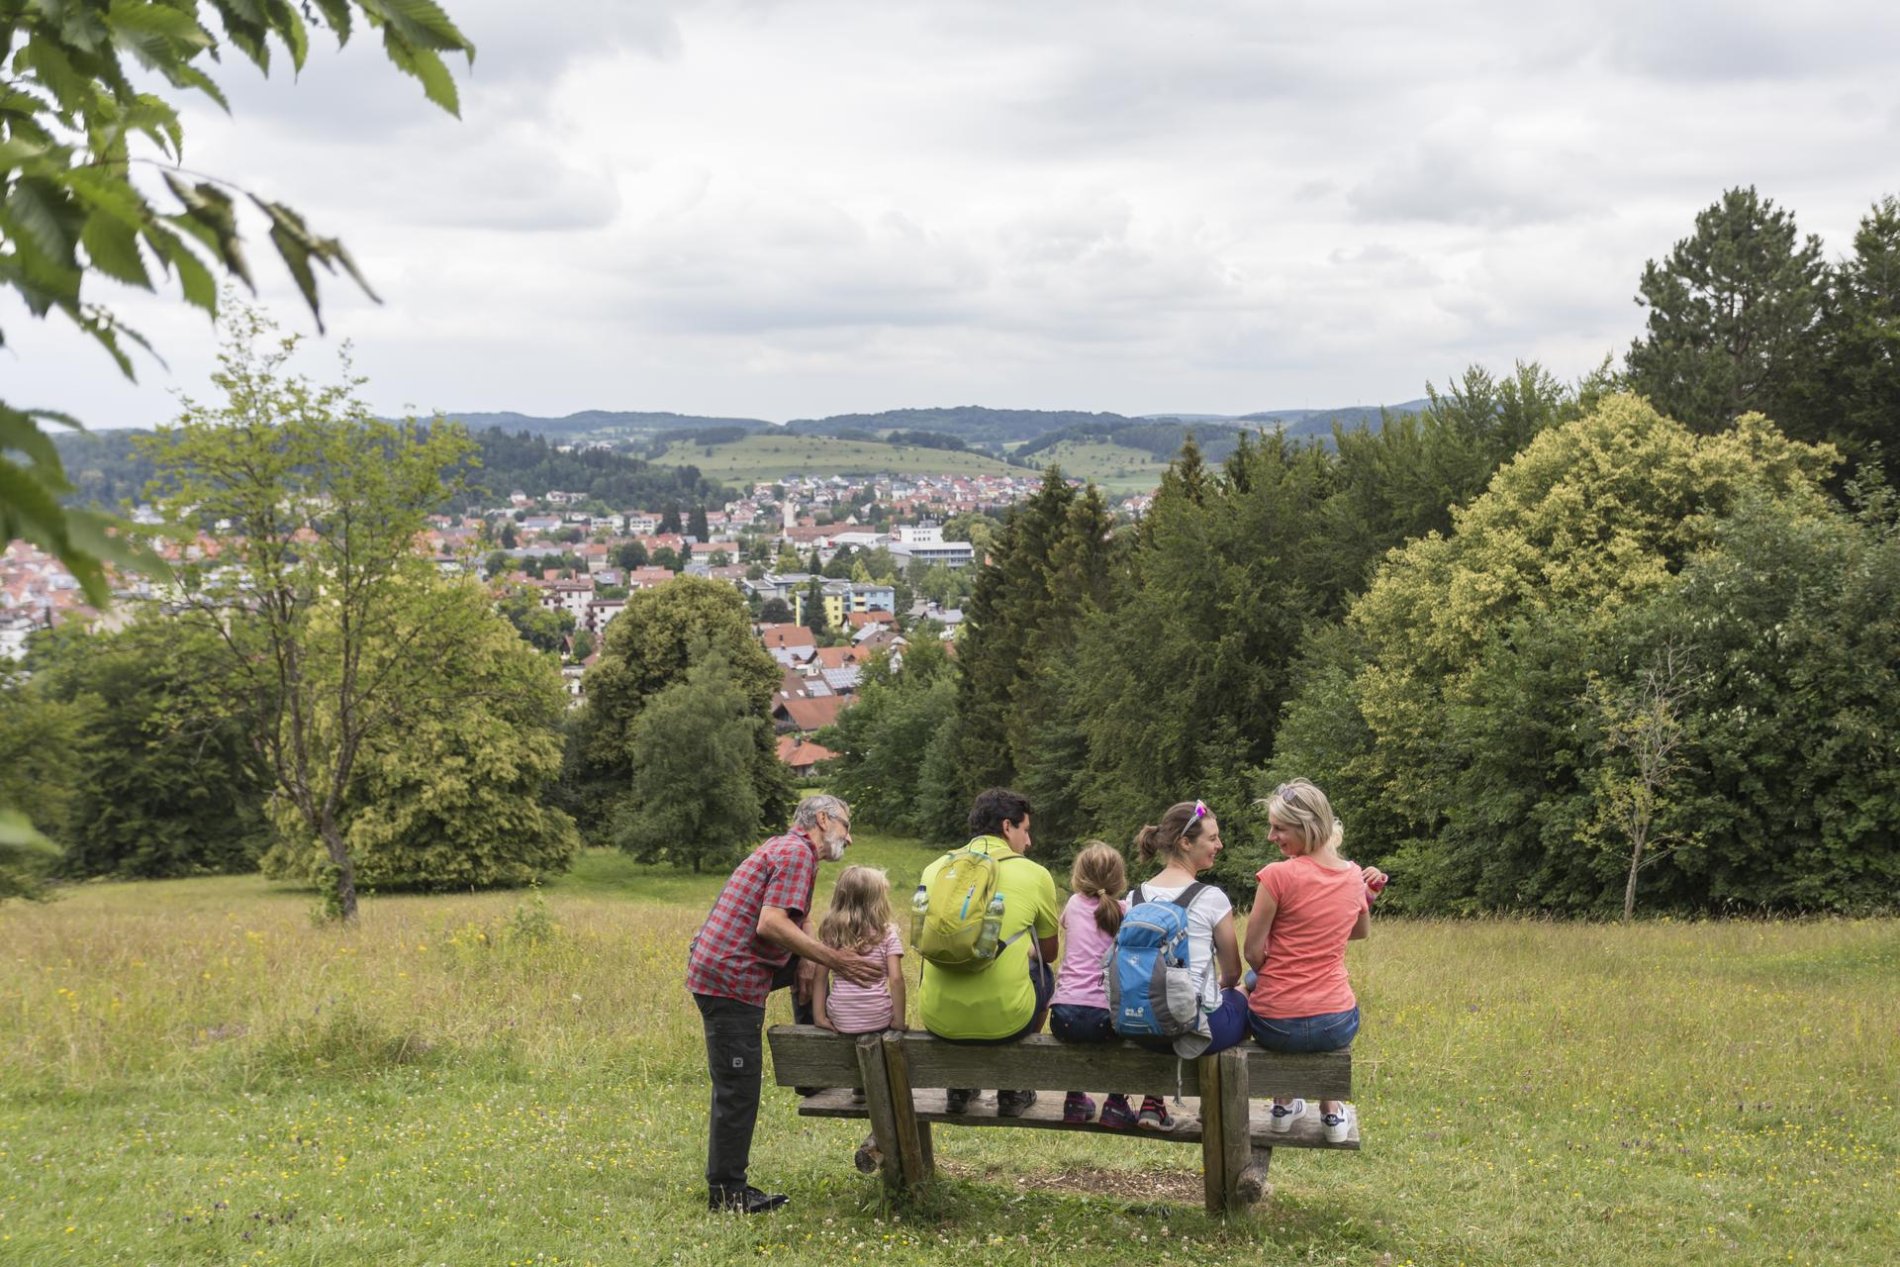 Gruppenreise ins Biosphärengebiet Schwäbische Alb. Ein Tag in der Münsinger Innenstad. Auf einer Holzbank sitzen mehrere Personen und Kinder. Vor ihnen ein weiter Ausblick über eine Stadt. Ringsherum ist Natur. Der Himmel ist bewölkt.t